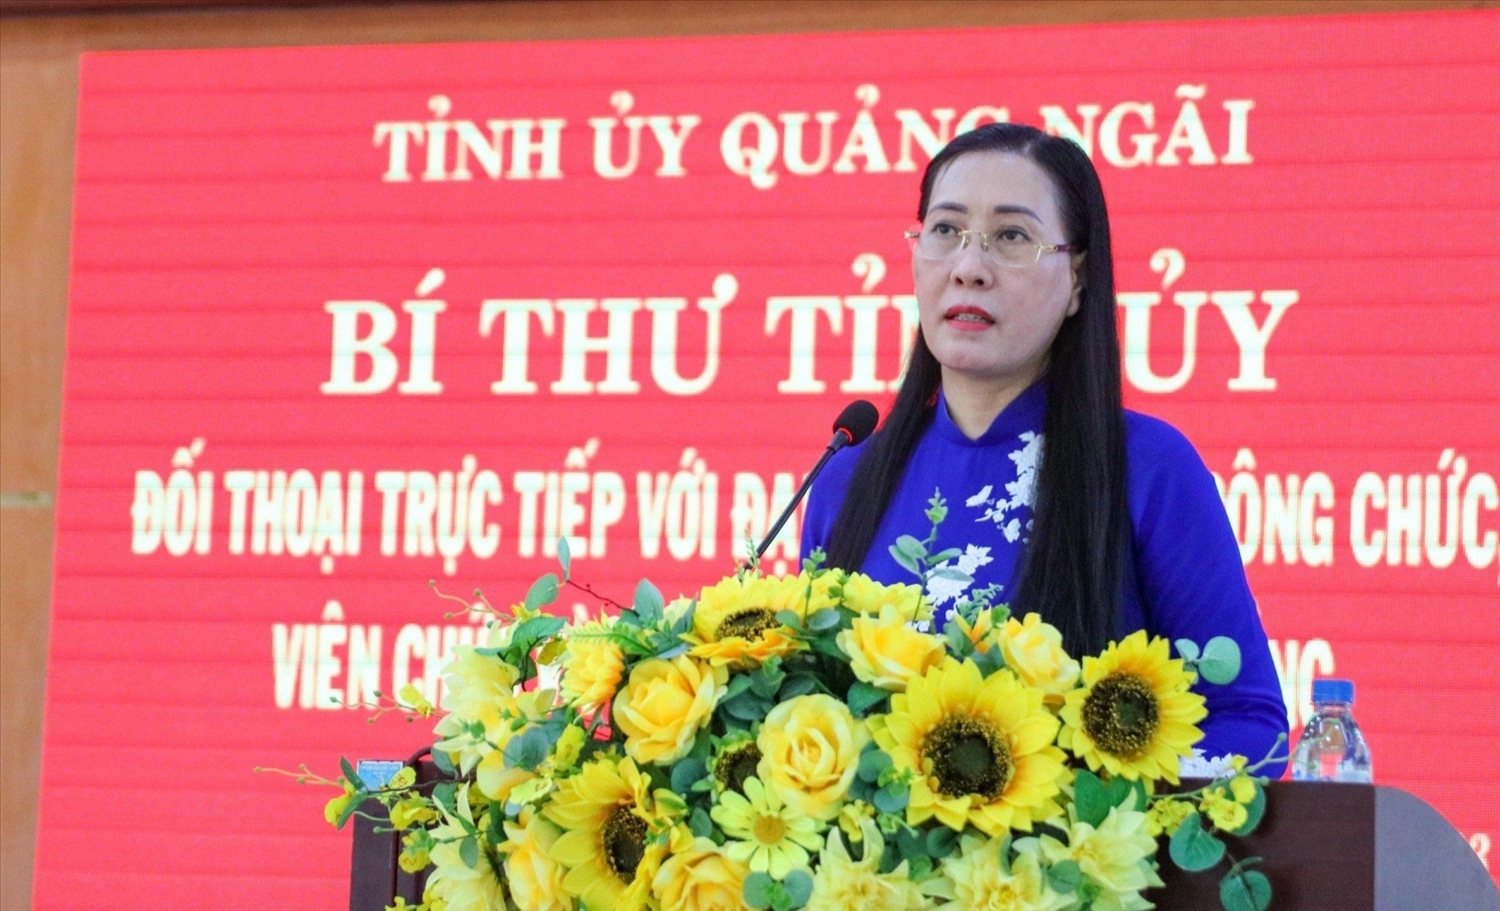 Bí thư Tỉnh ủy Quảng Ngãi Bùi Thị Quỳnh Vân phát biểu tại buổi đối thoại